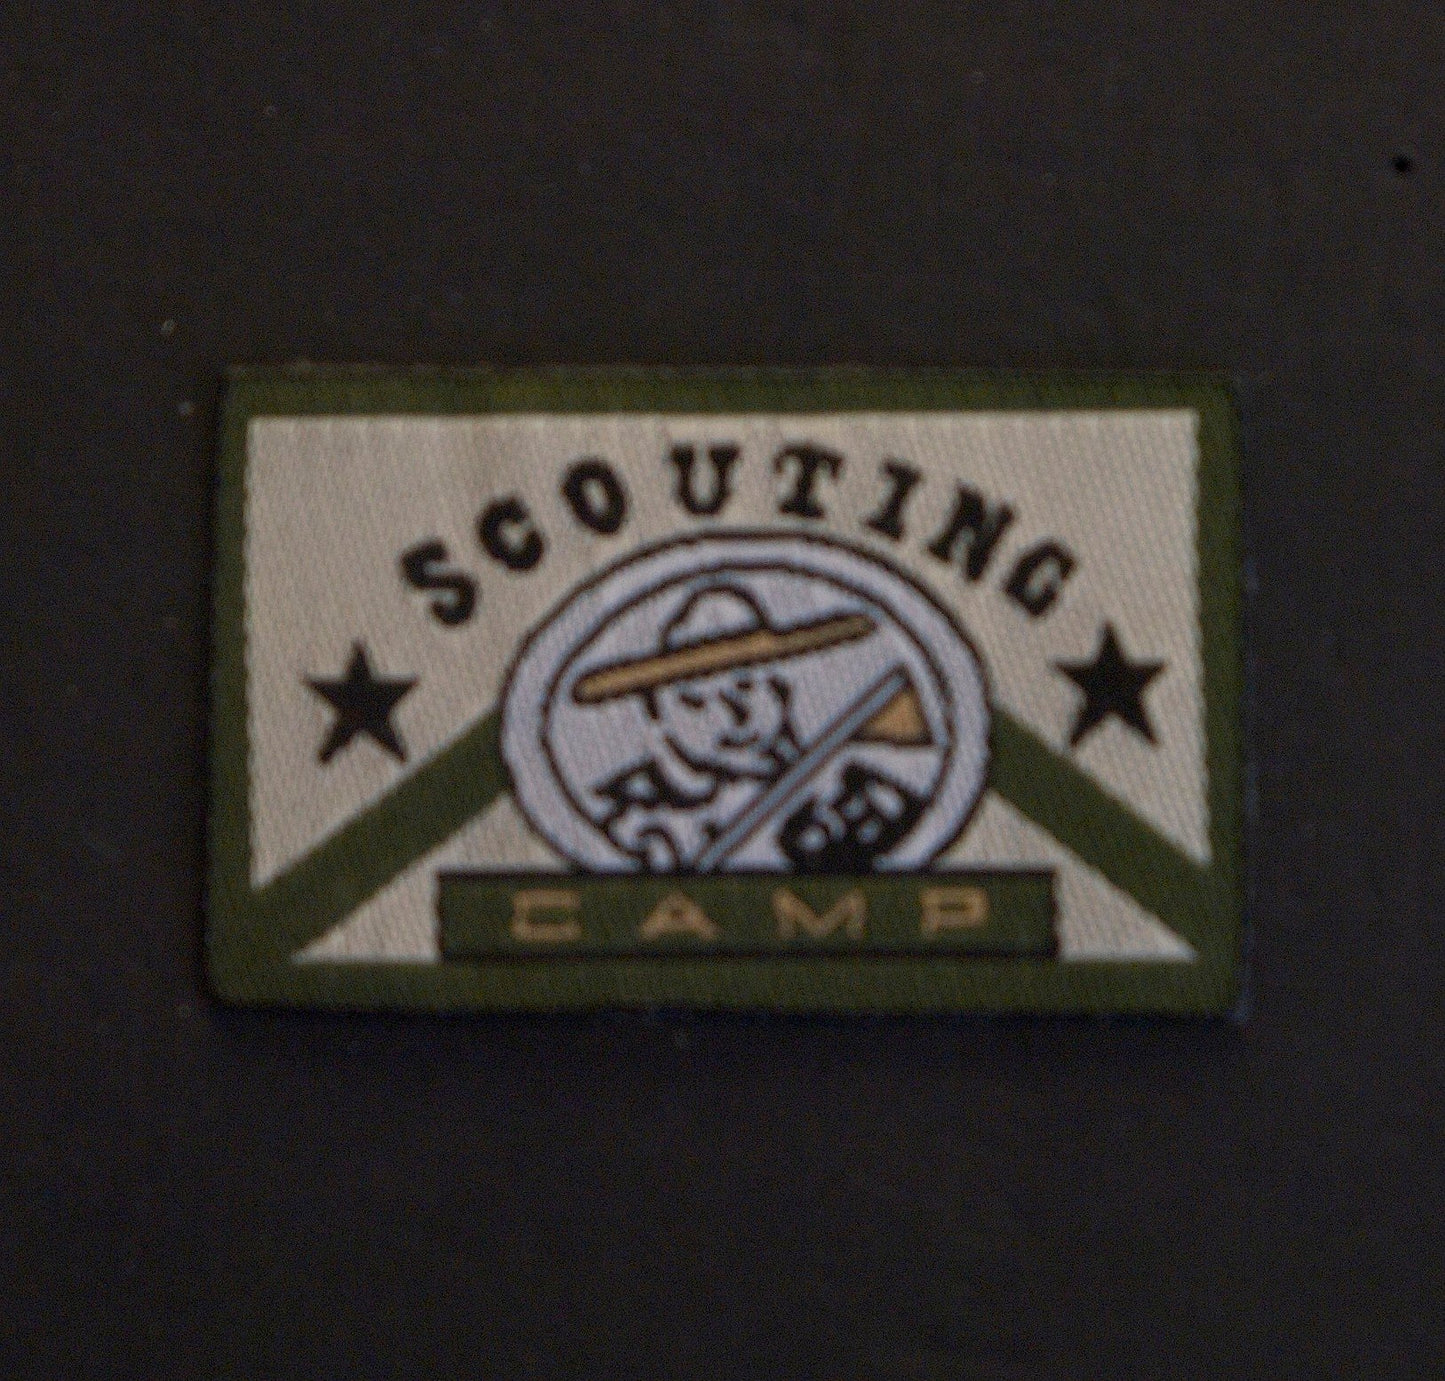 Scout motif